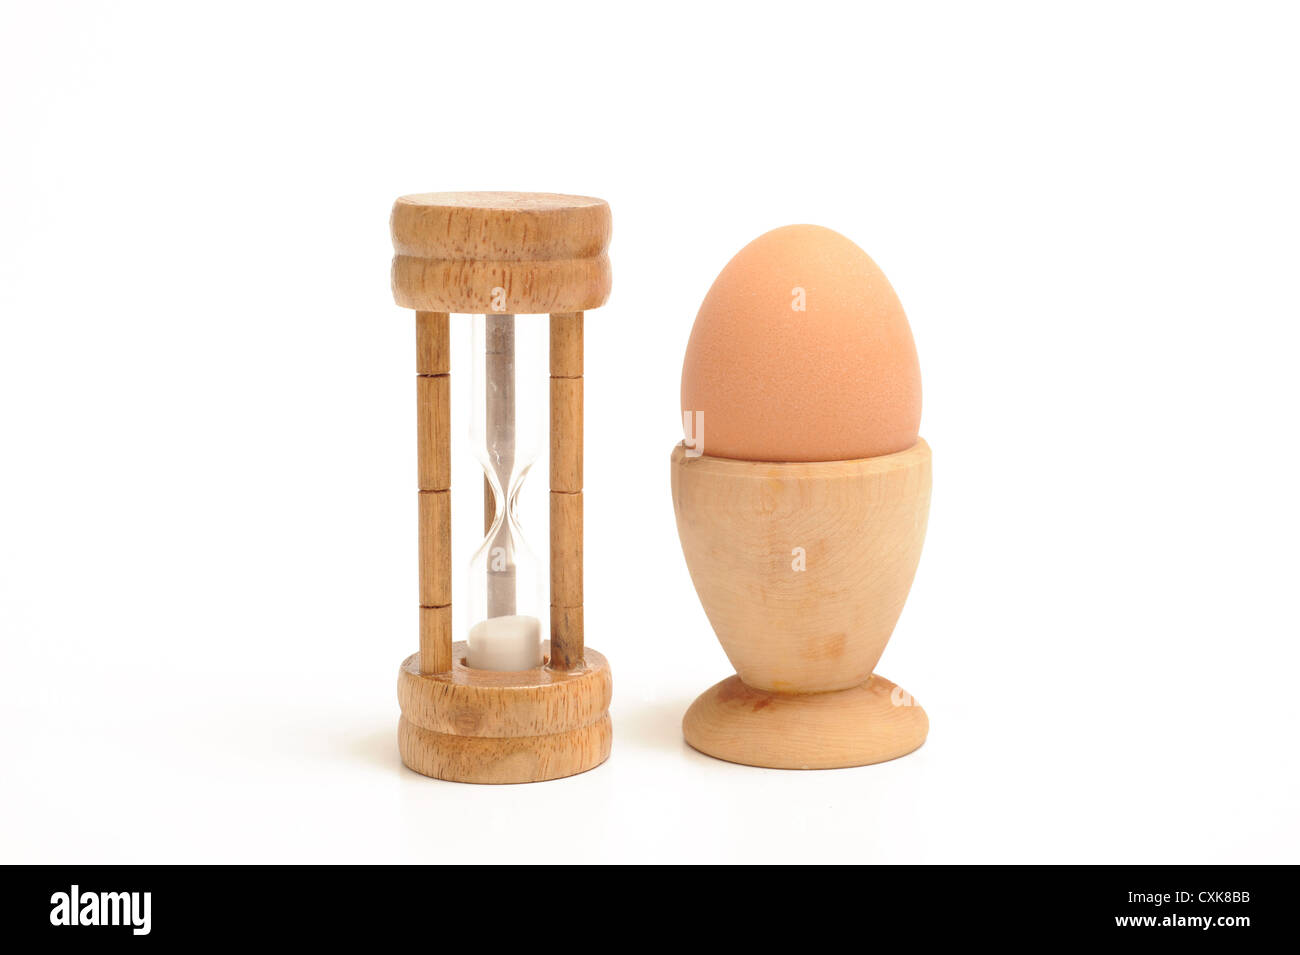 Egg timer and boiled egg Stock Photo